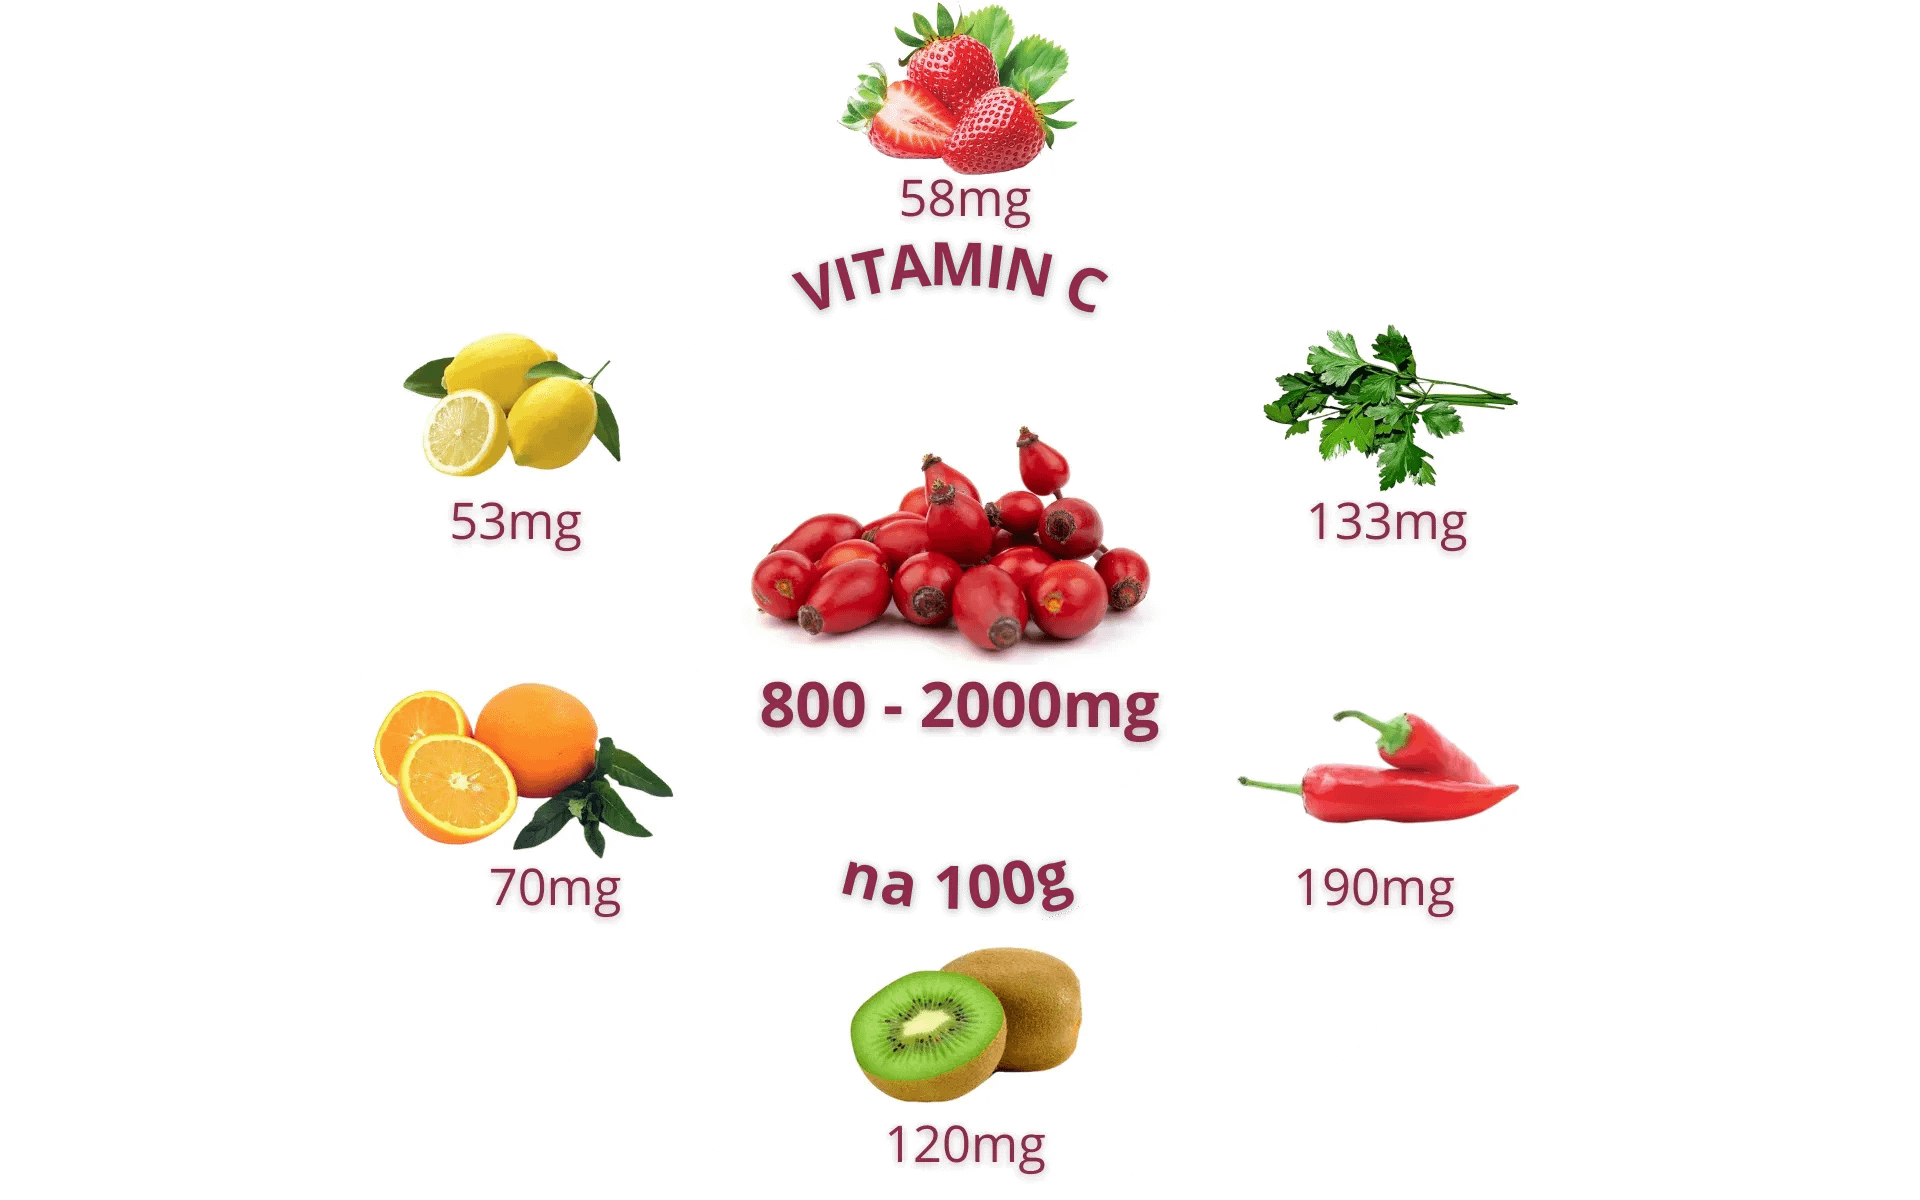 Nutritivne vrednosti - vitamin c